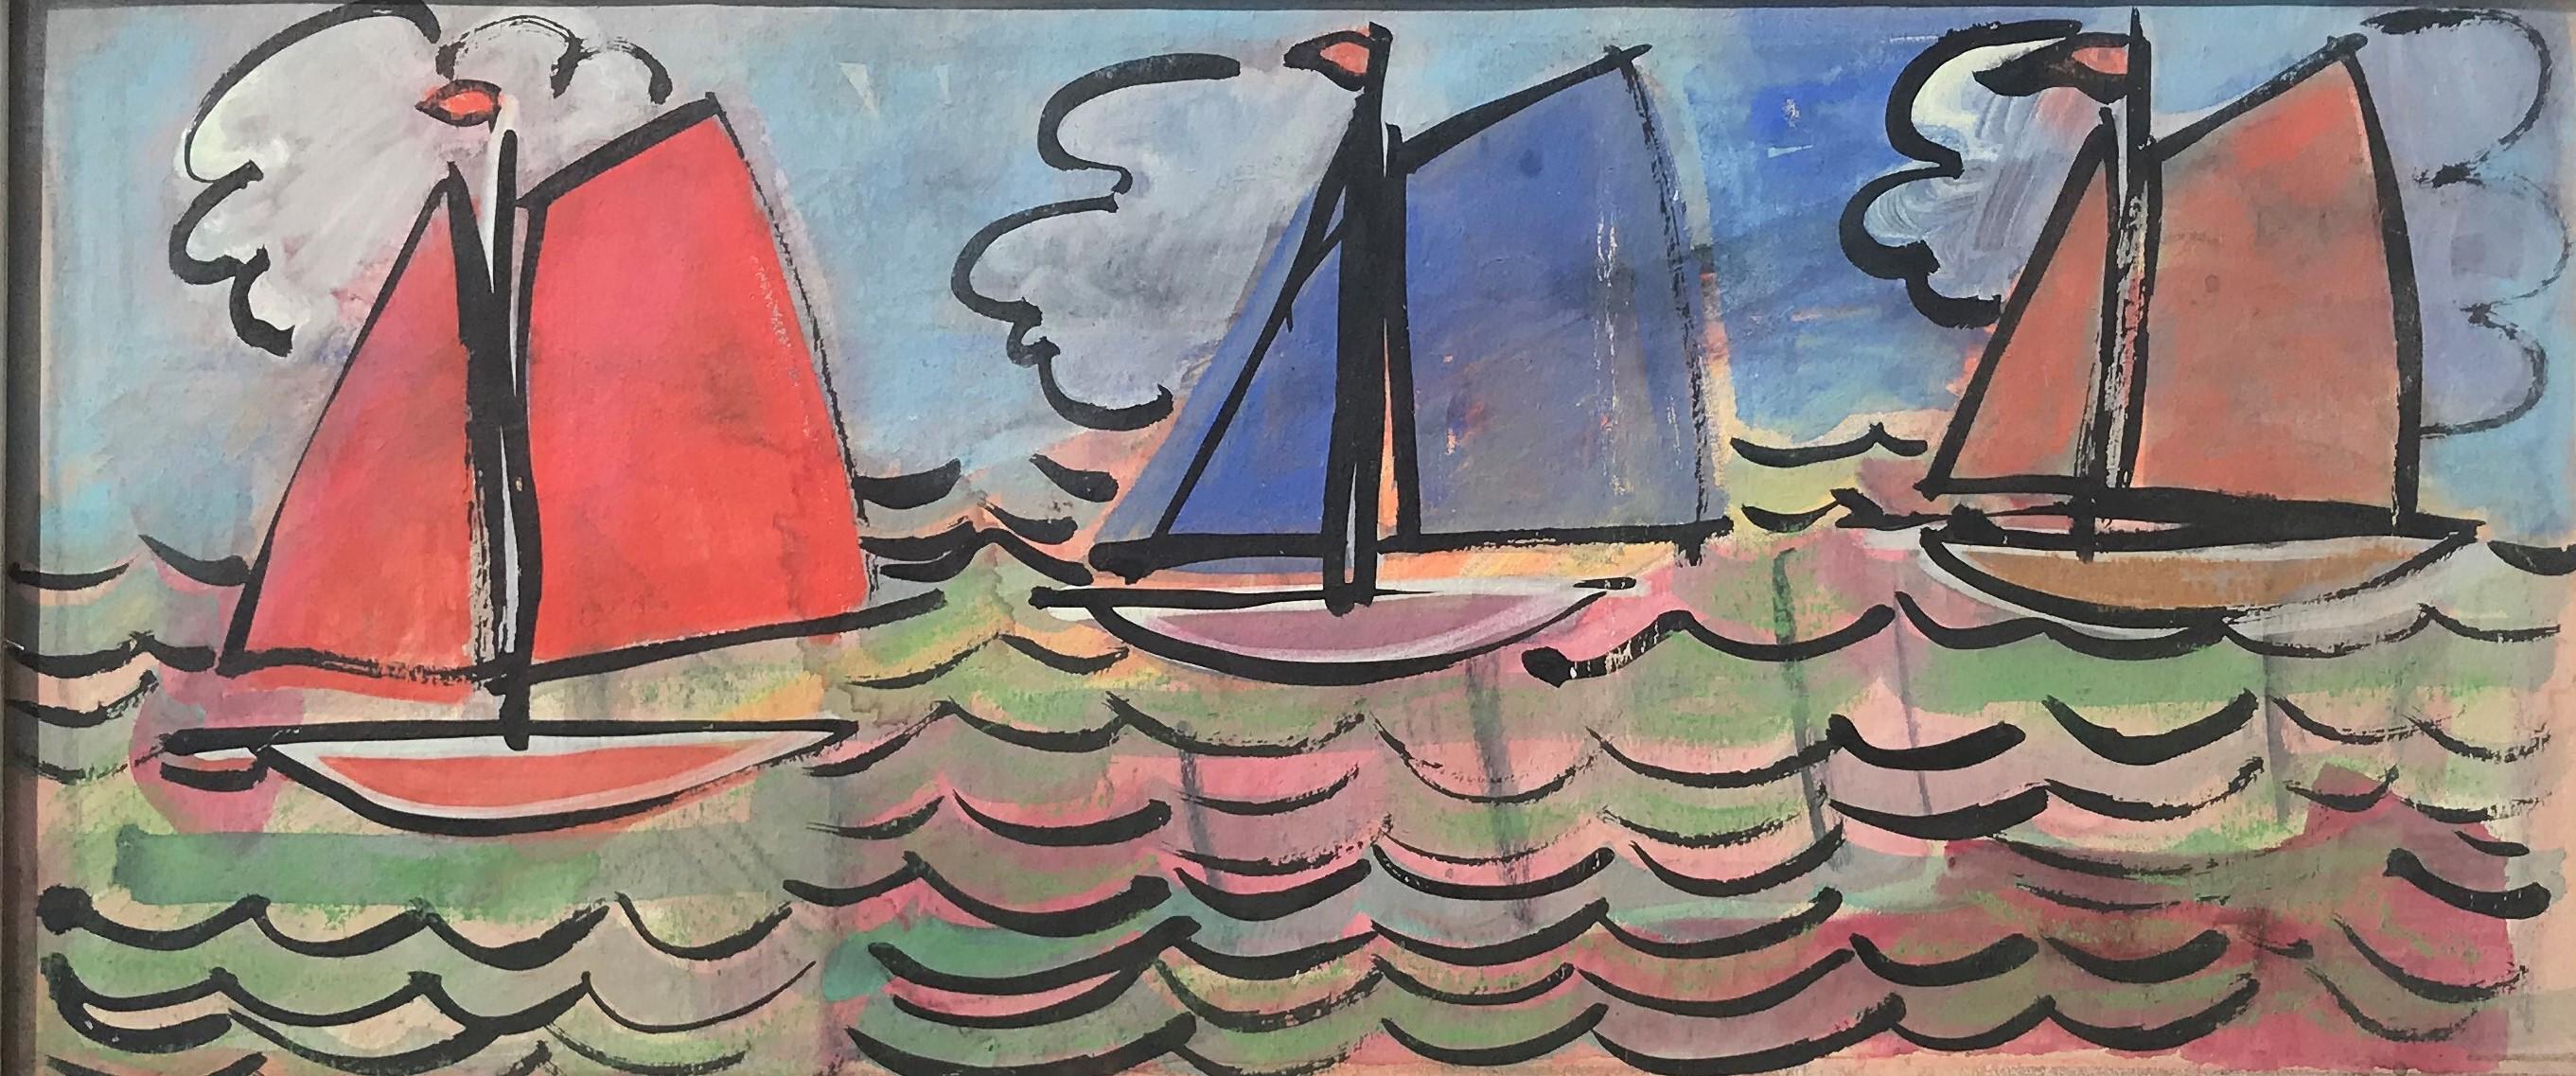 Unknown Landscape Painting – Segelboote auf See, Französische Schule des 20. Jahrhunderts, farbenfrohes Original in Öl auf Leinwand